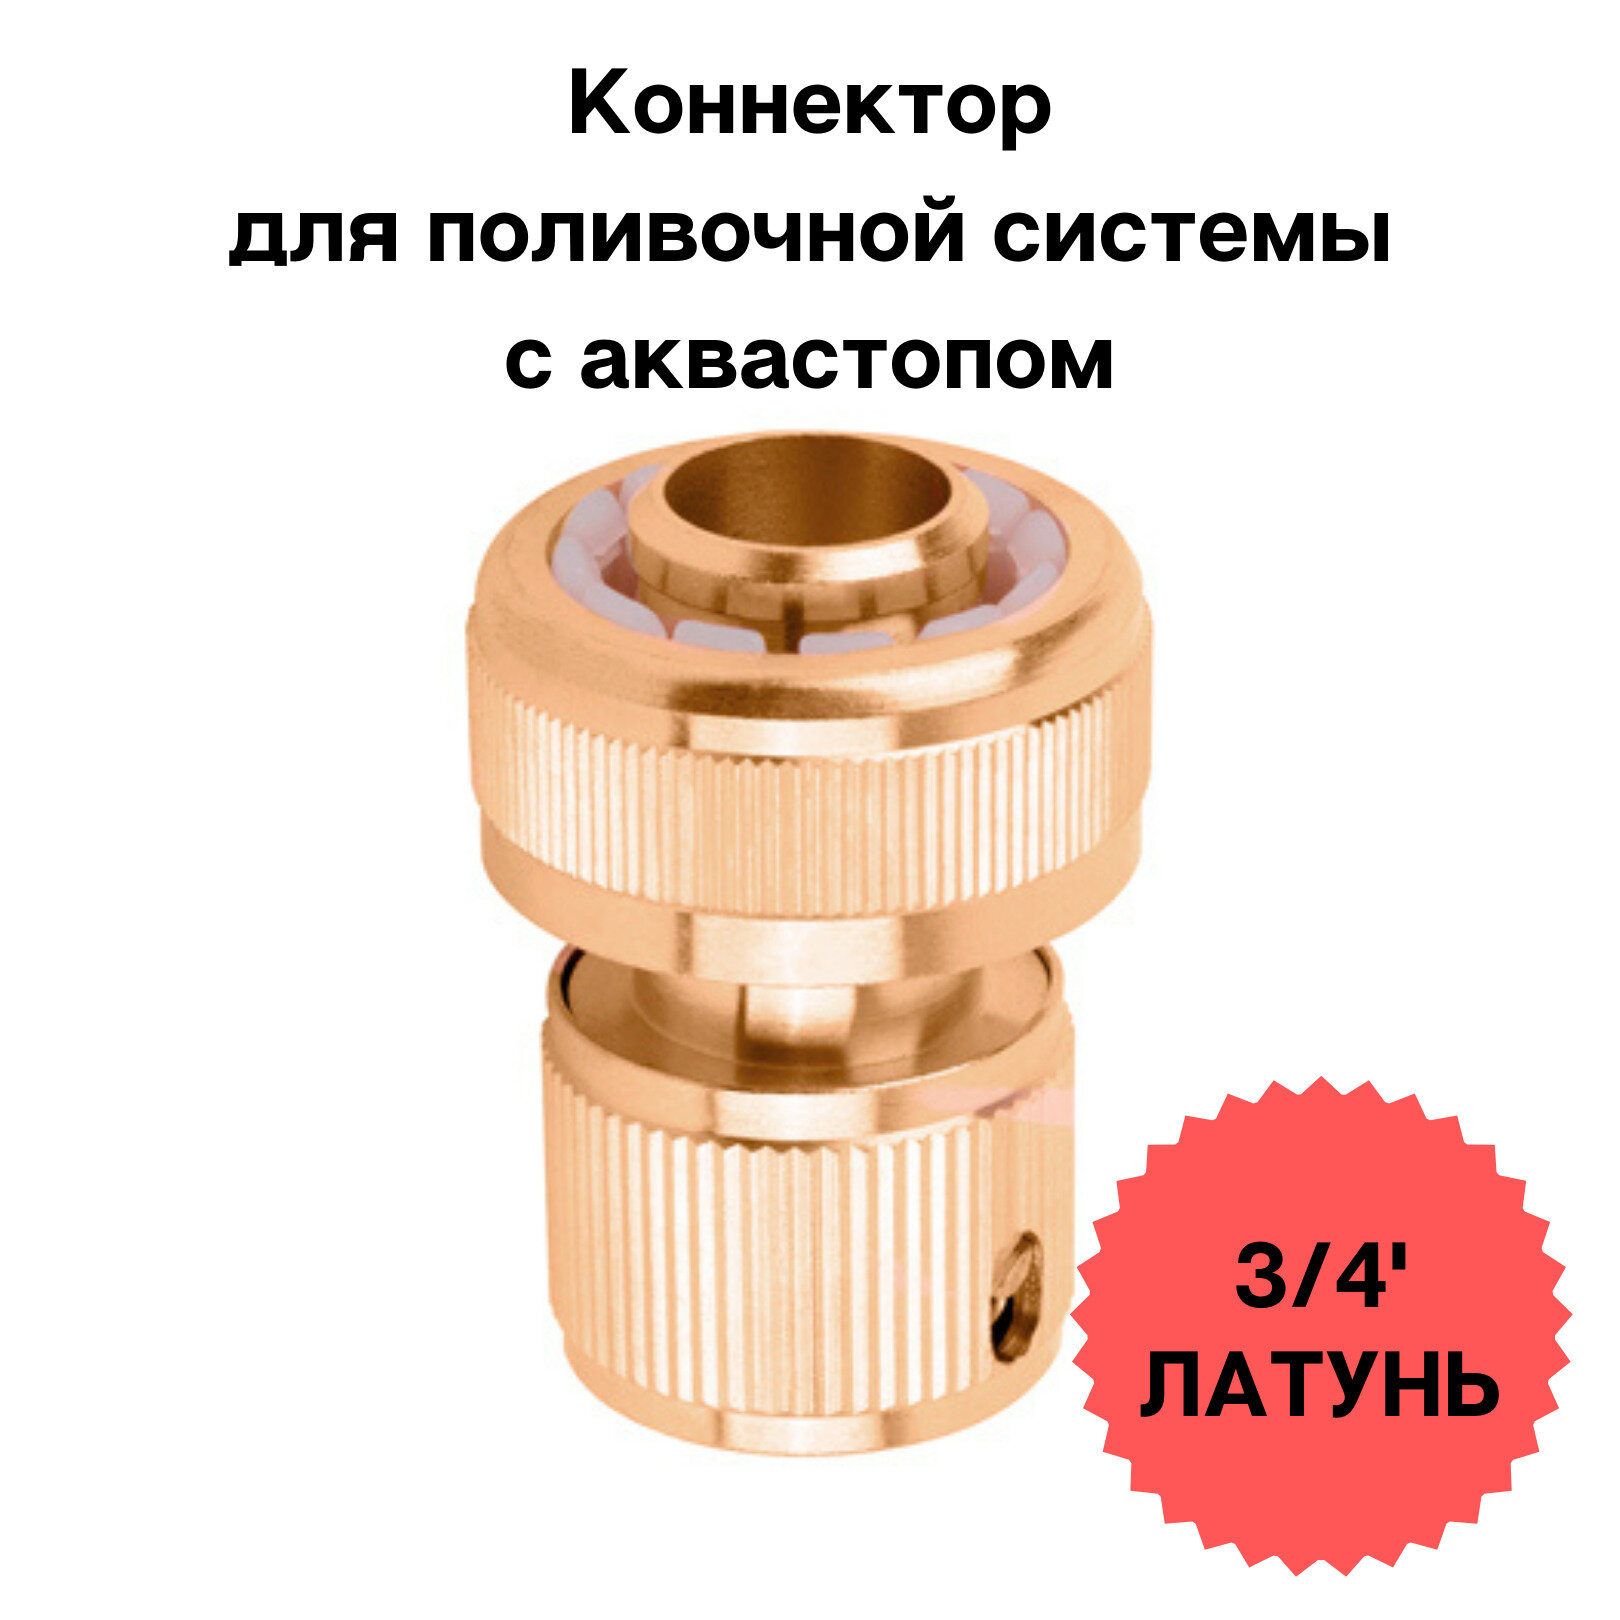 Коннектор 3/4' латунь с авастопом, Соединитель быстросъемный для шланга, универсальный коннектор для шланга